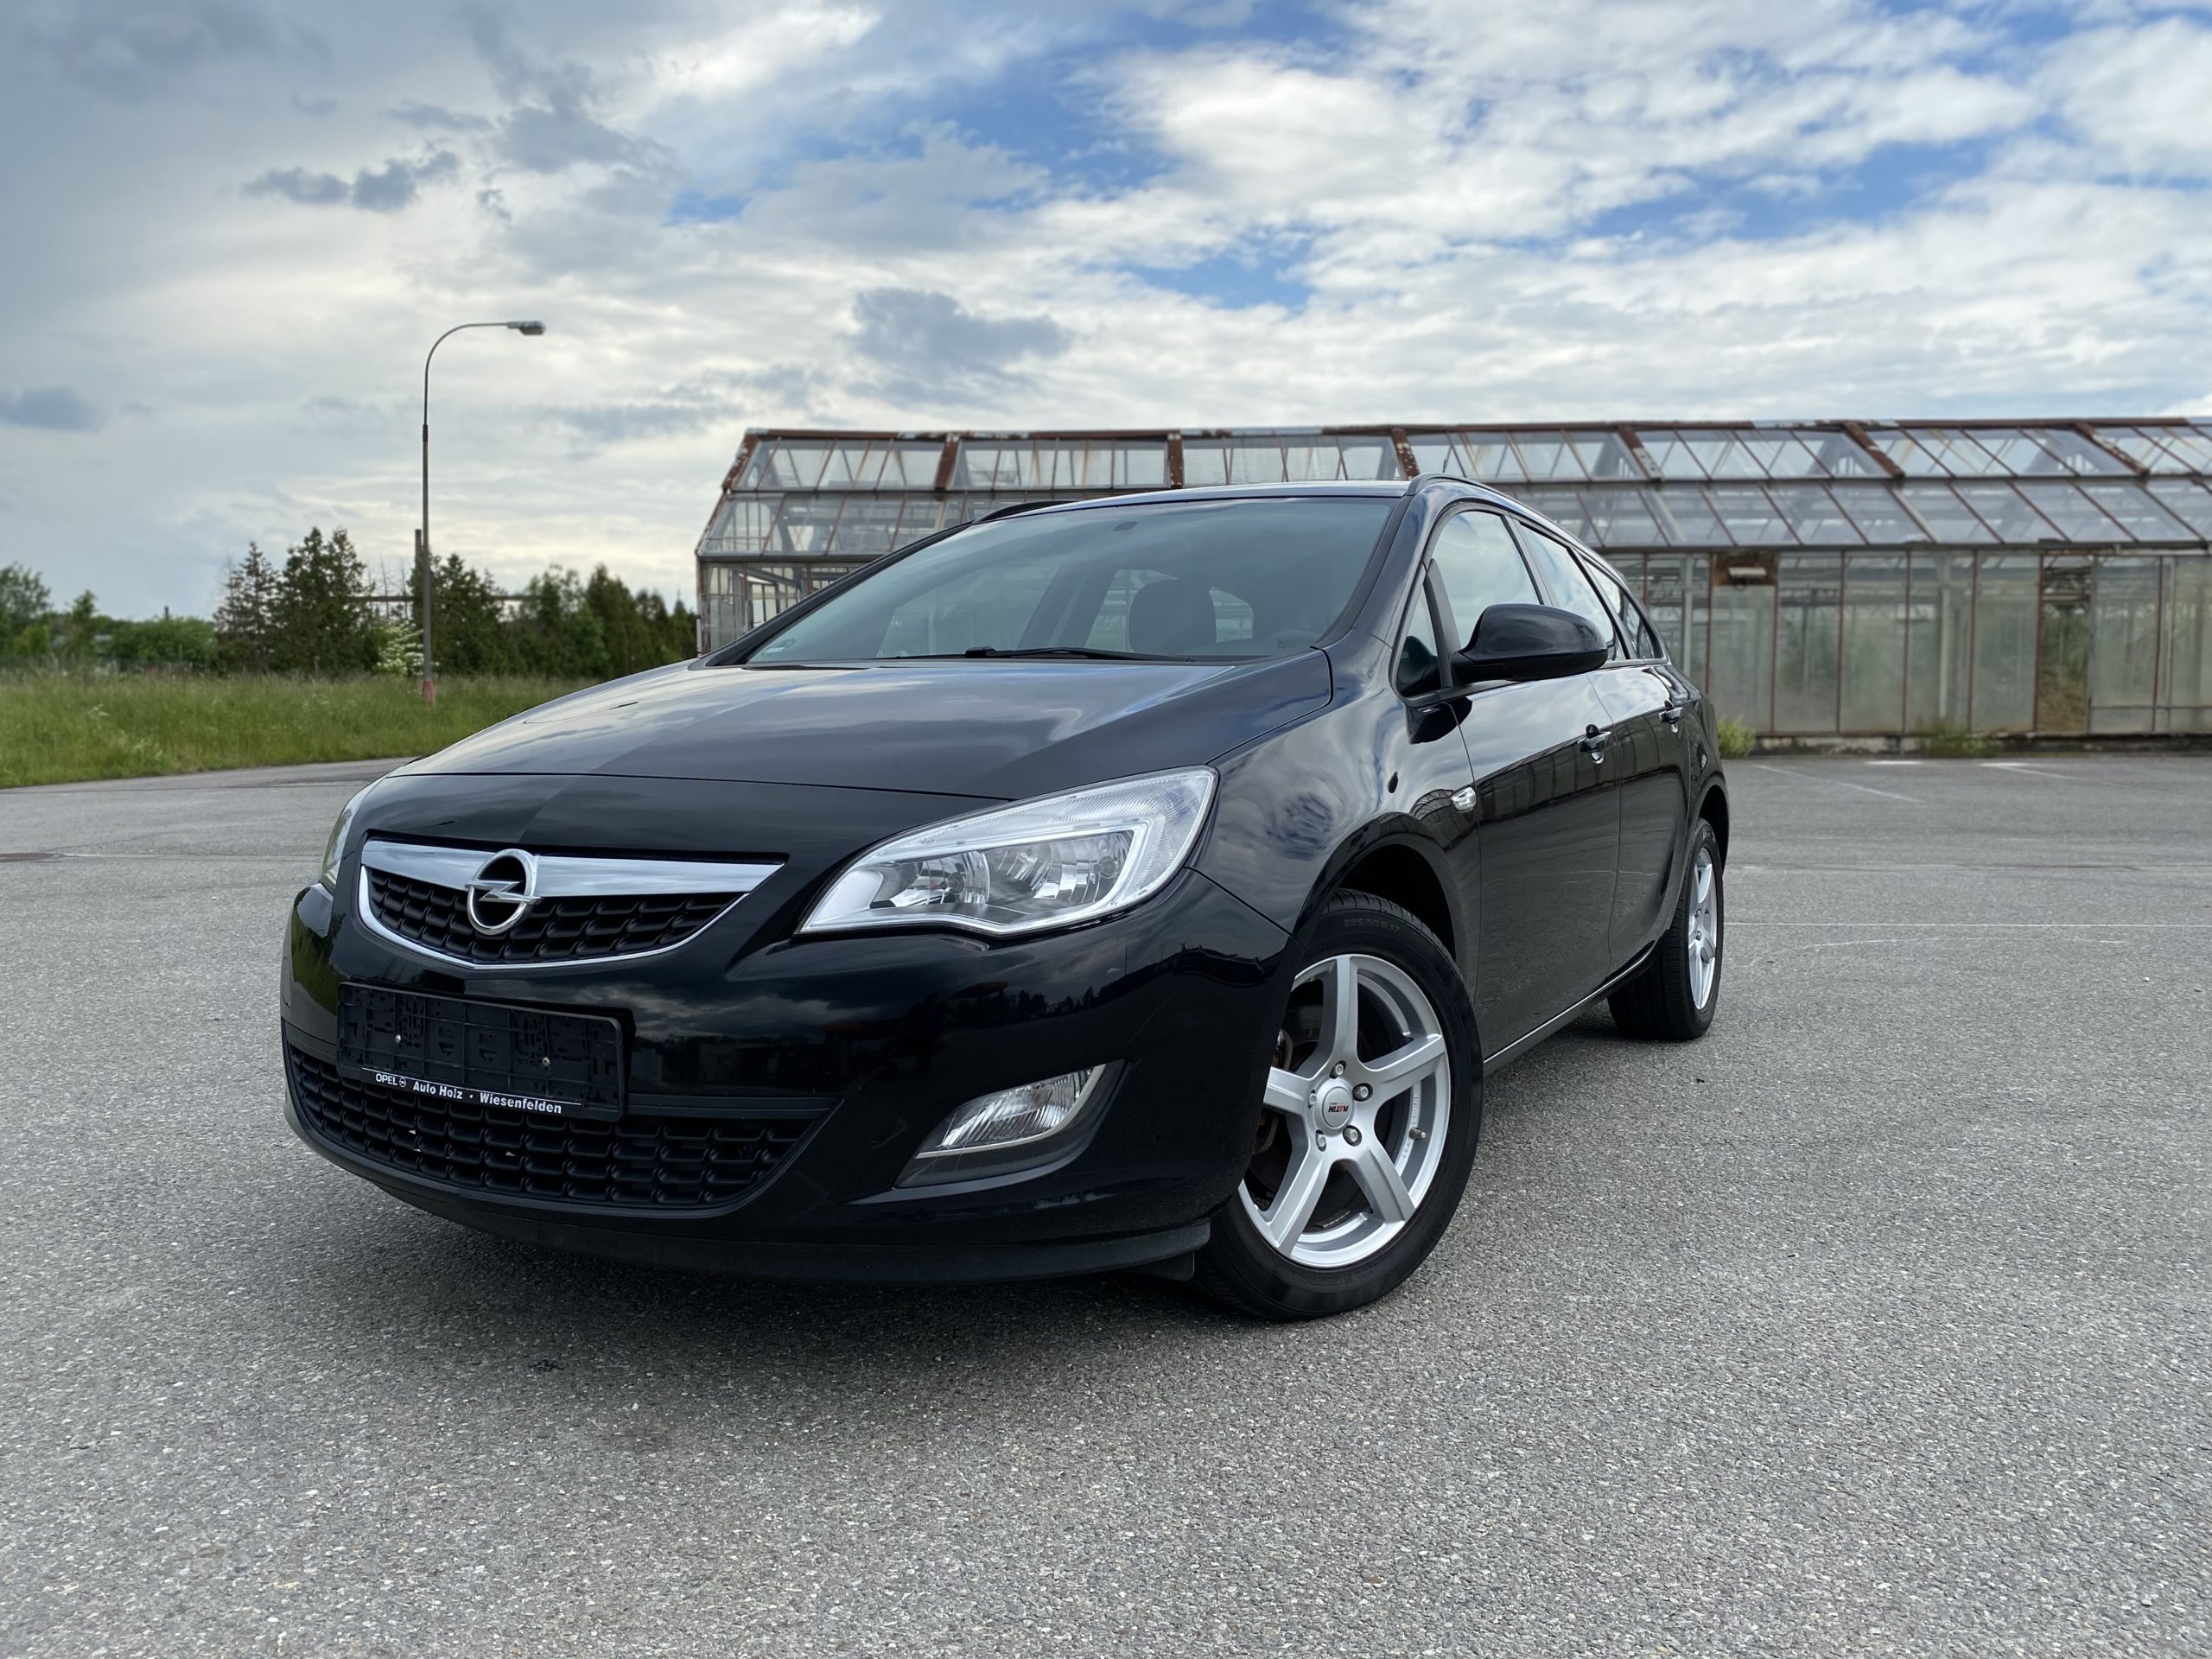 Přečtete si více ze článku [Prodáno] Novinka k prodeji – Opel Astra 1.7 CDTI